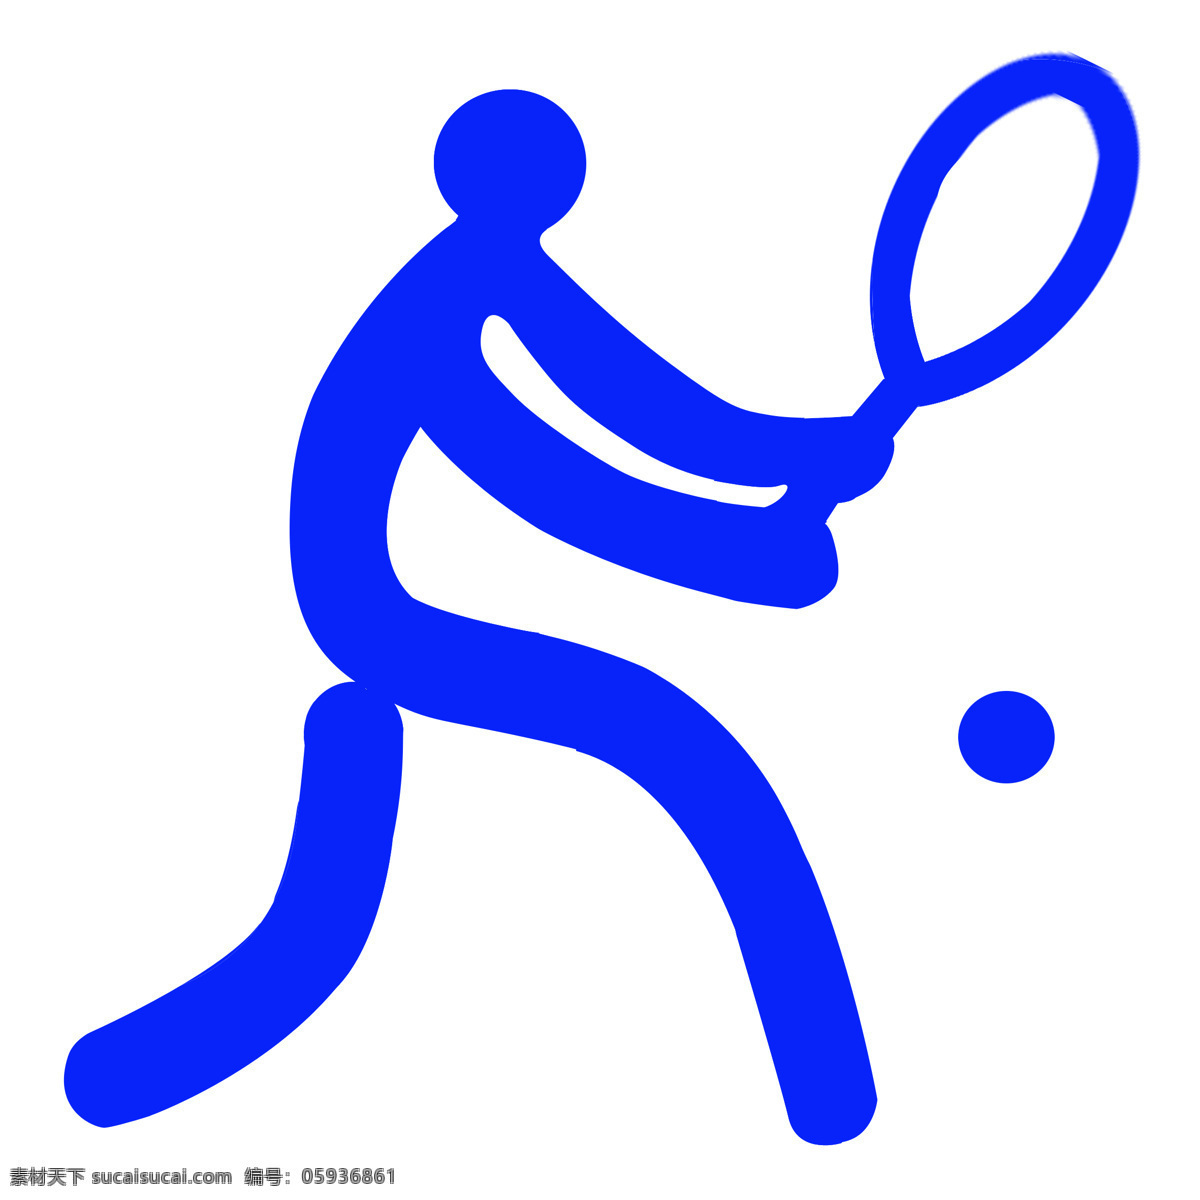 体育运动 项目 标识 网球 体育 运动项目 蓝色 标识图标 公共标识标志 标志图标